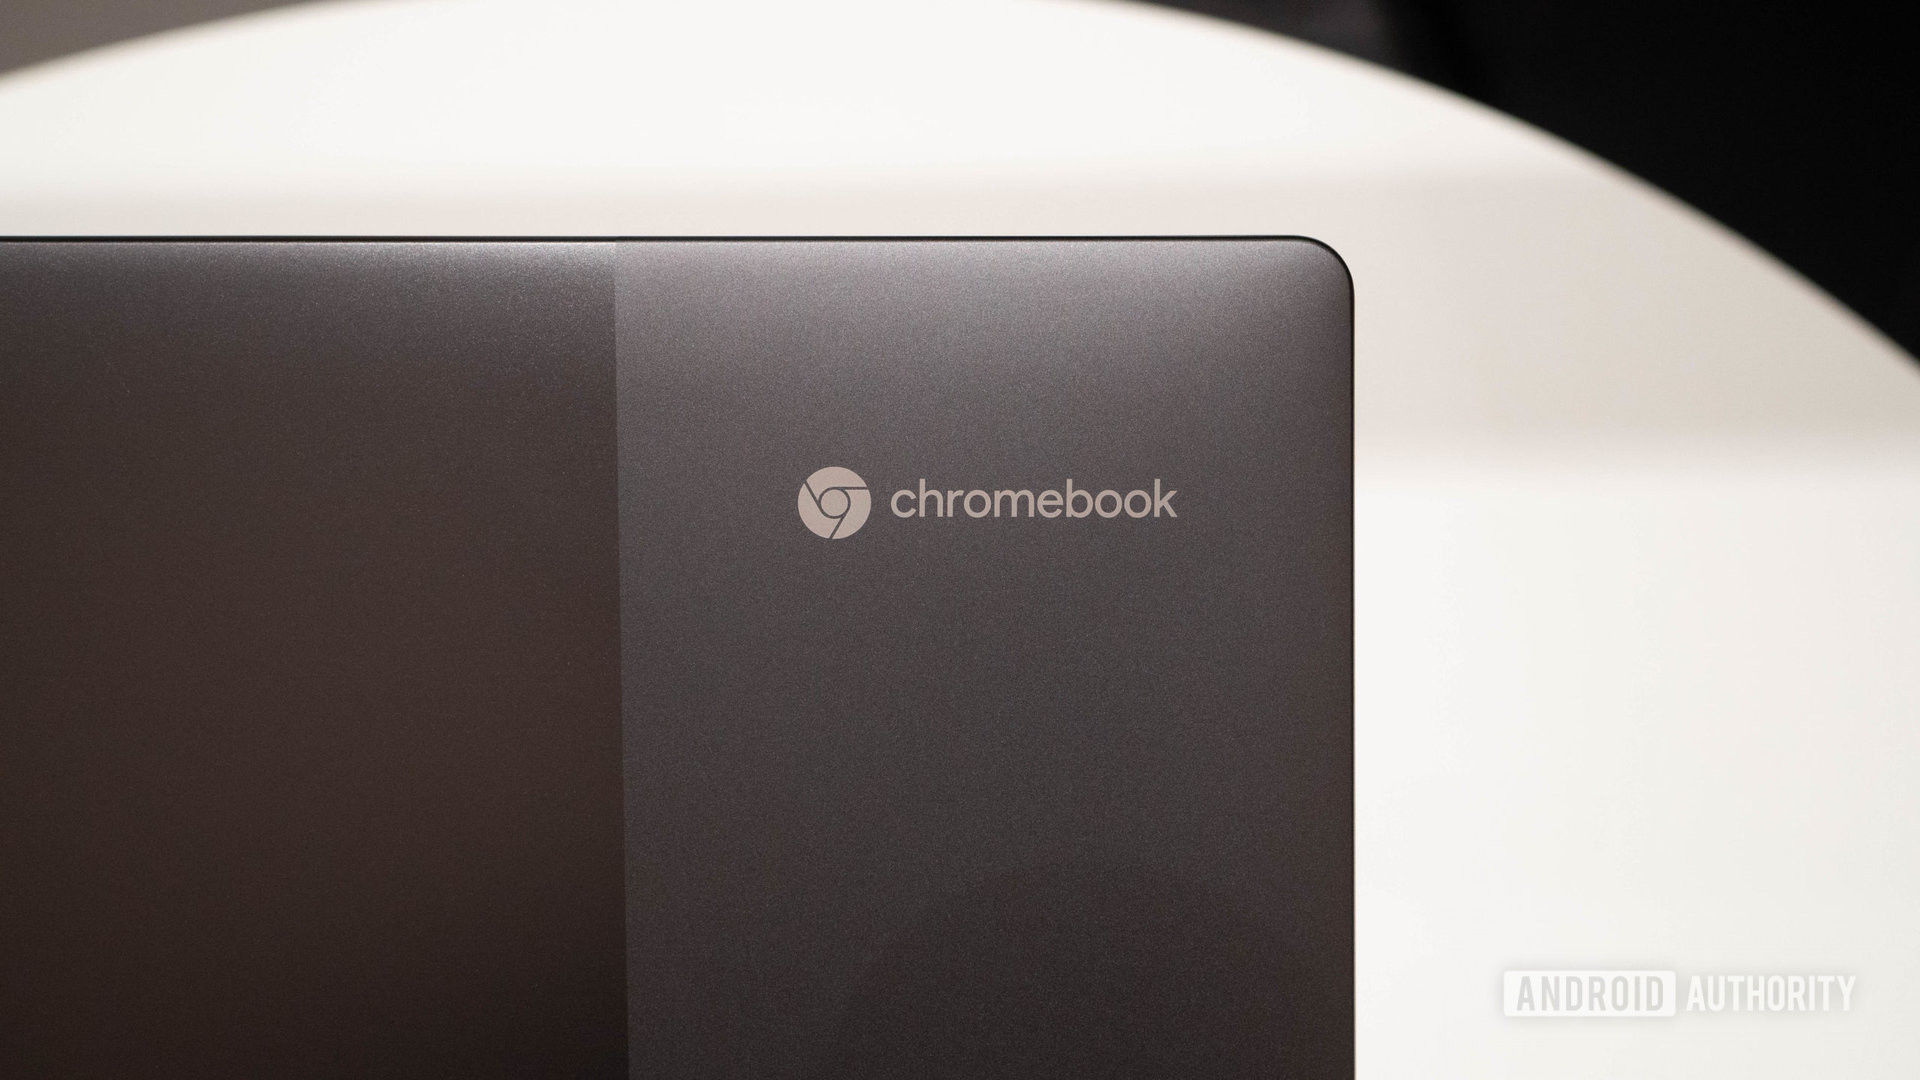 Lenovo IdeaPad 5i Chromebook showing Chromebook logo